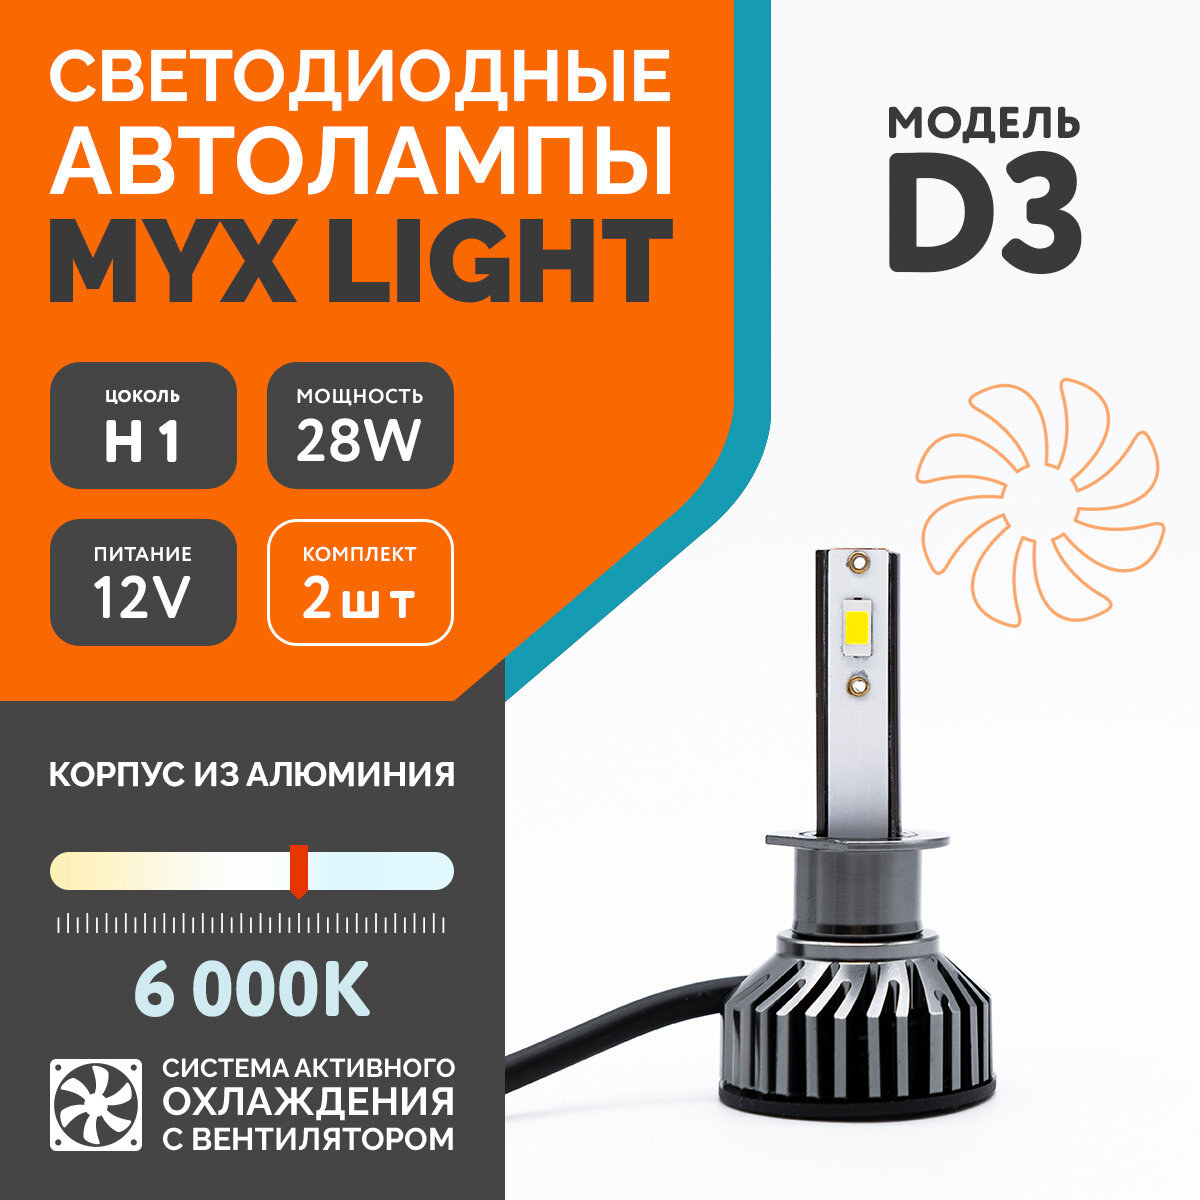 Автолампы светодиодные MYX Light D3, напряжение 12V, мощность 28W, чип CSP 3570, температура света 6000K, комплект 2 шт., цоколь H1